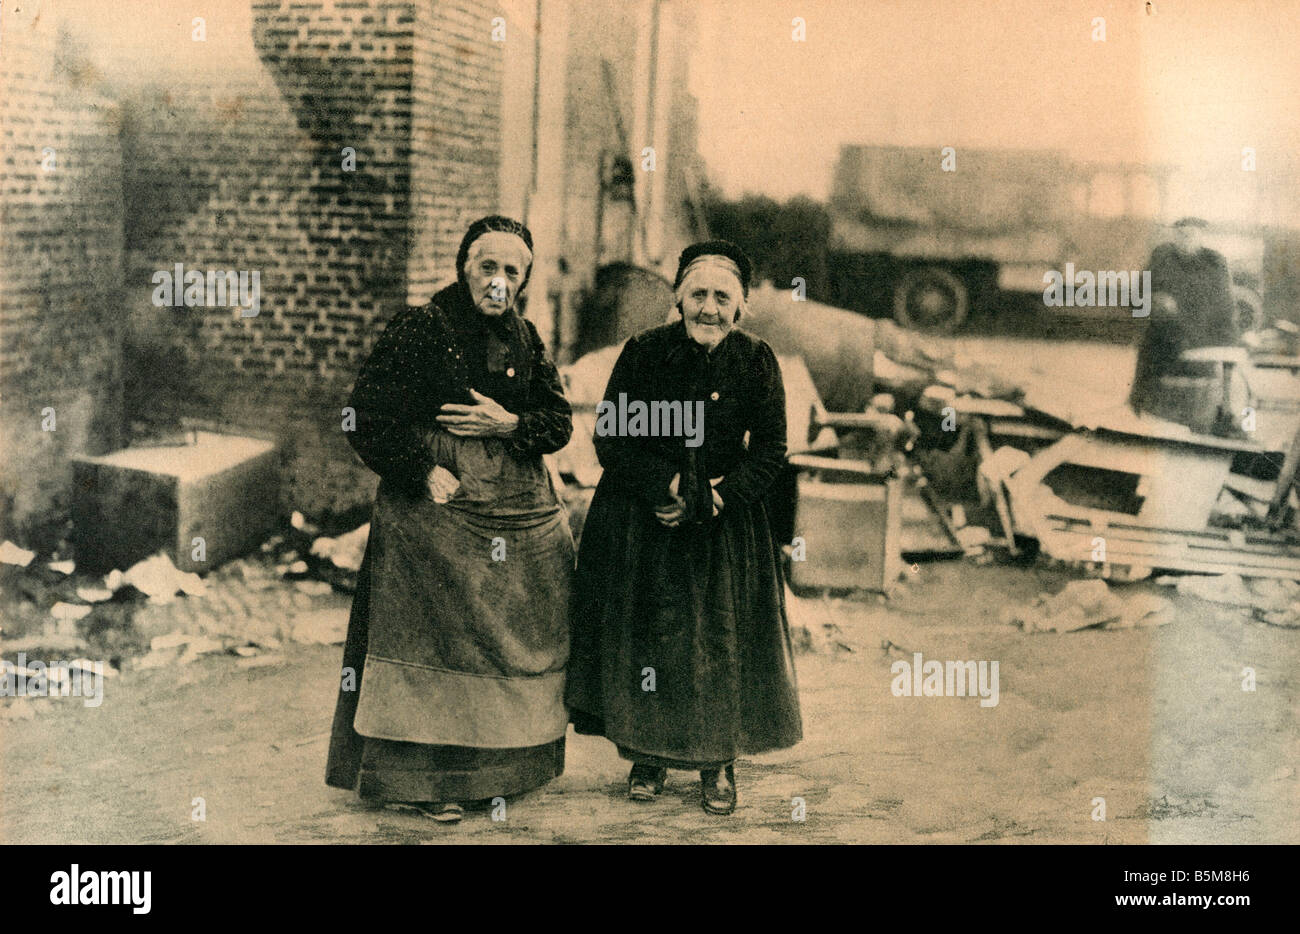 2 G55 F1 1918 18 E WW1 Bailleul Zivilisten Foto Geschichte Weltkrieg ein Frankreich im Alter von Bewohnern in Bailleul zerstört die Entnahme von Stockfoto